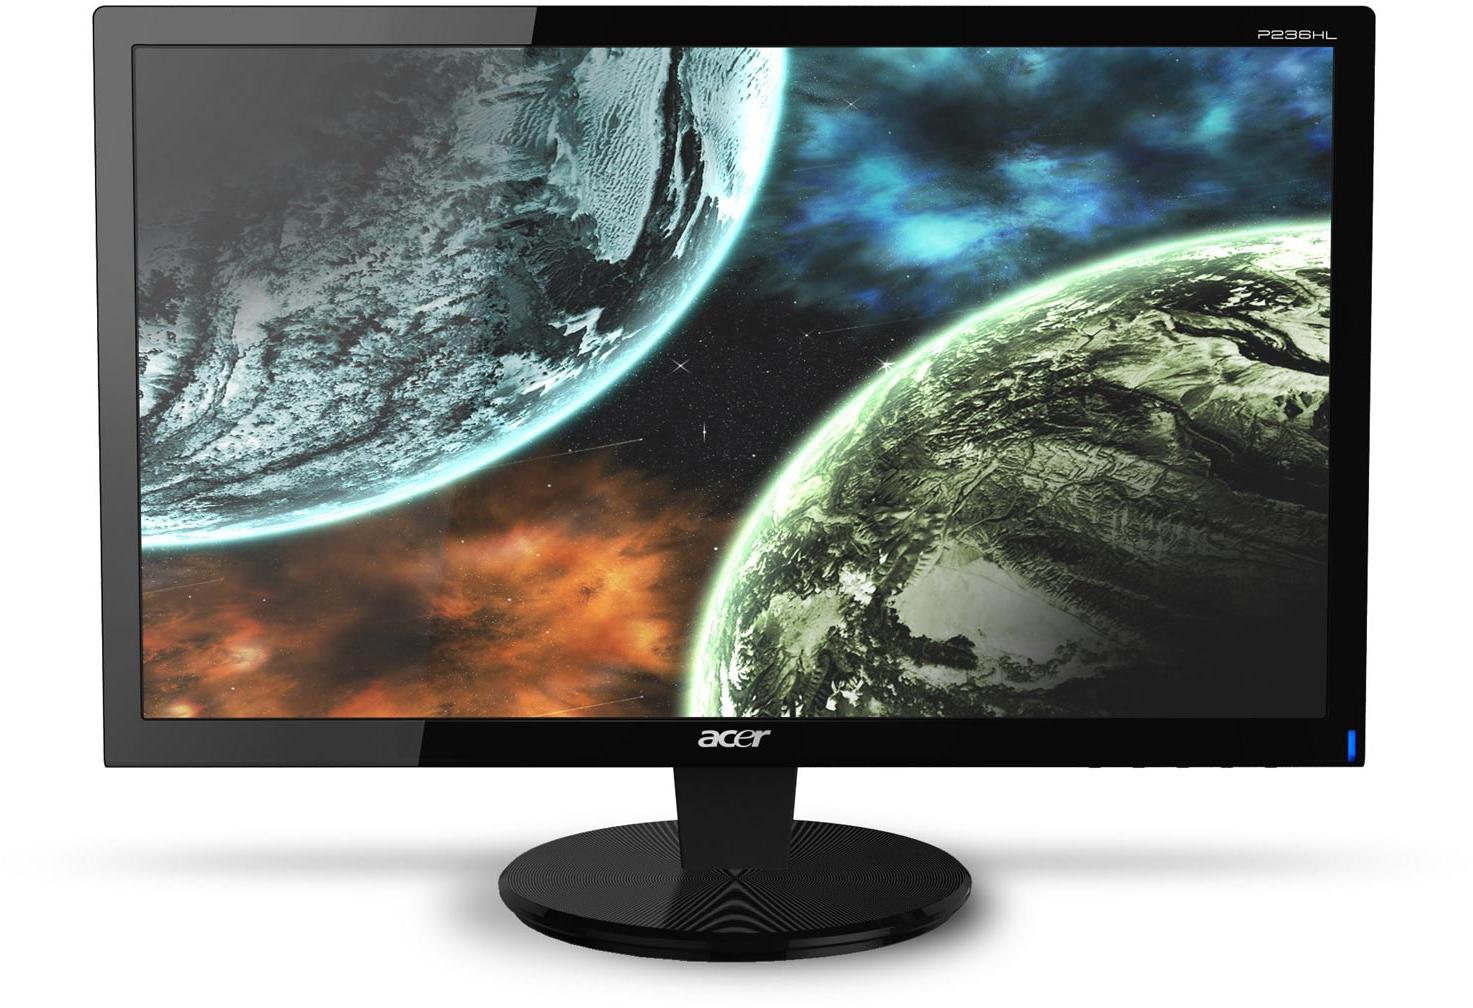   Acer P246Hbd (ET.FP6HE.001)  2